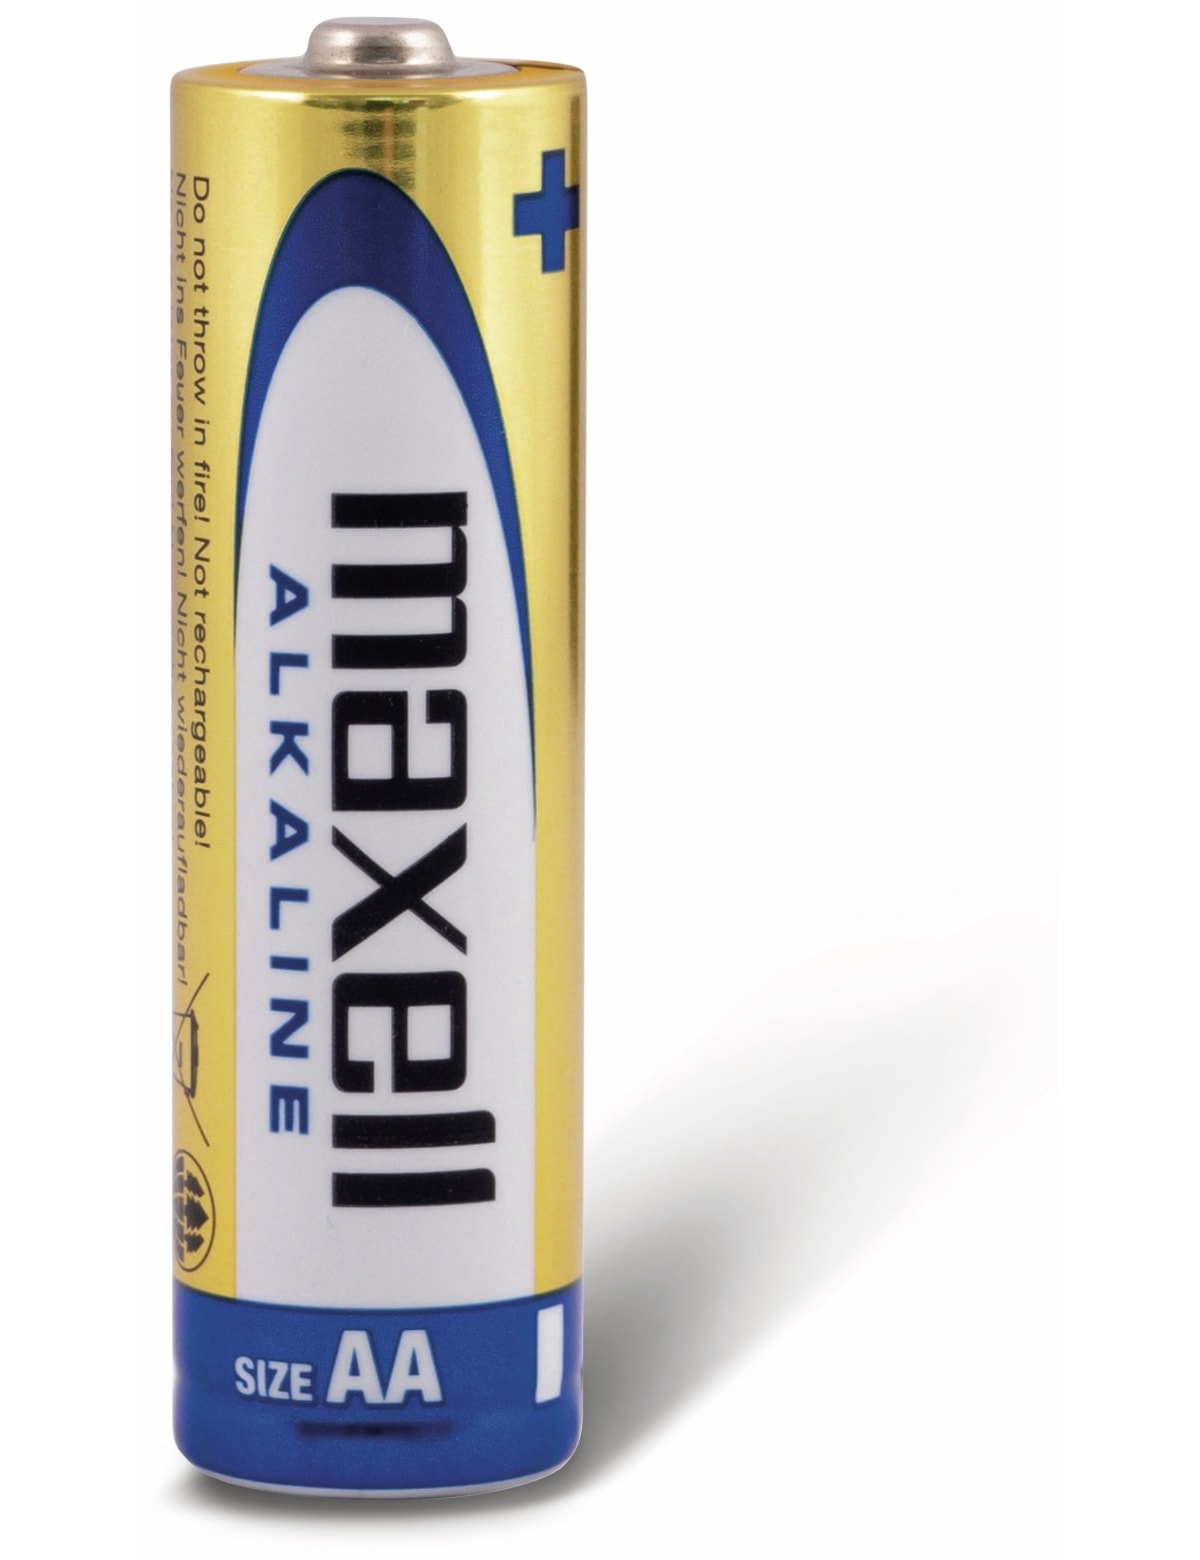 MAXELL Mignon-Batterie Alkaline, AA, LR6, 10 Stück